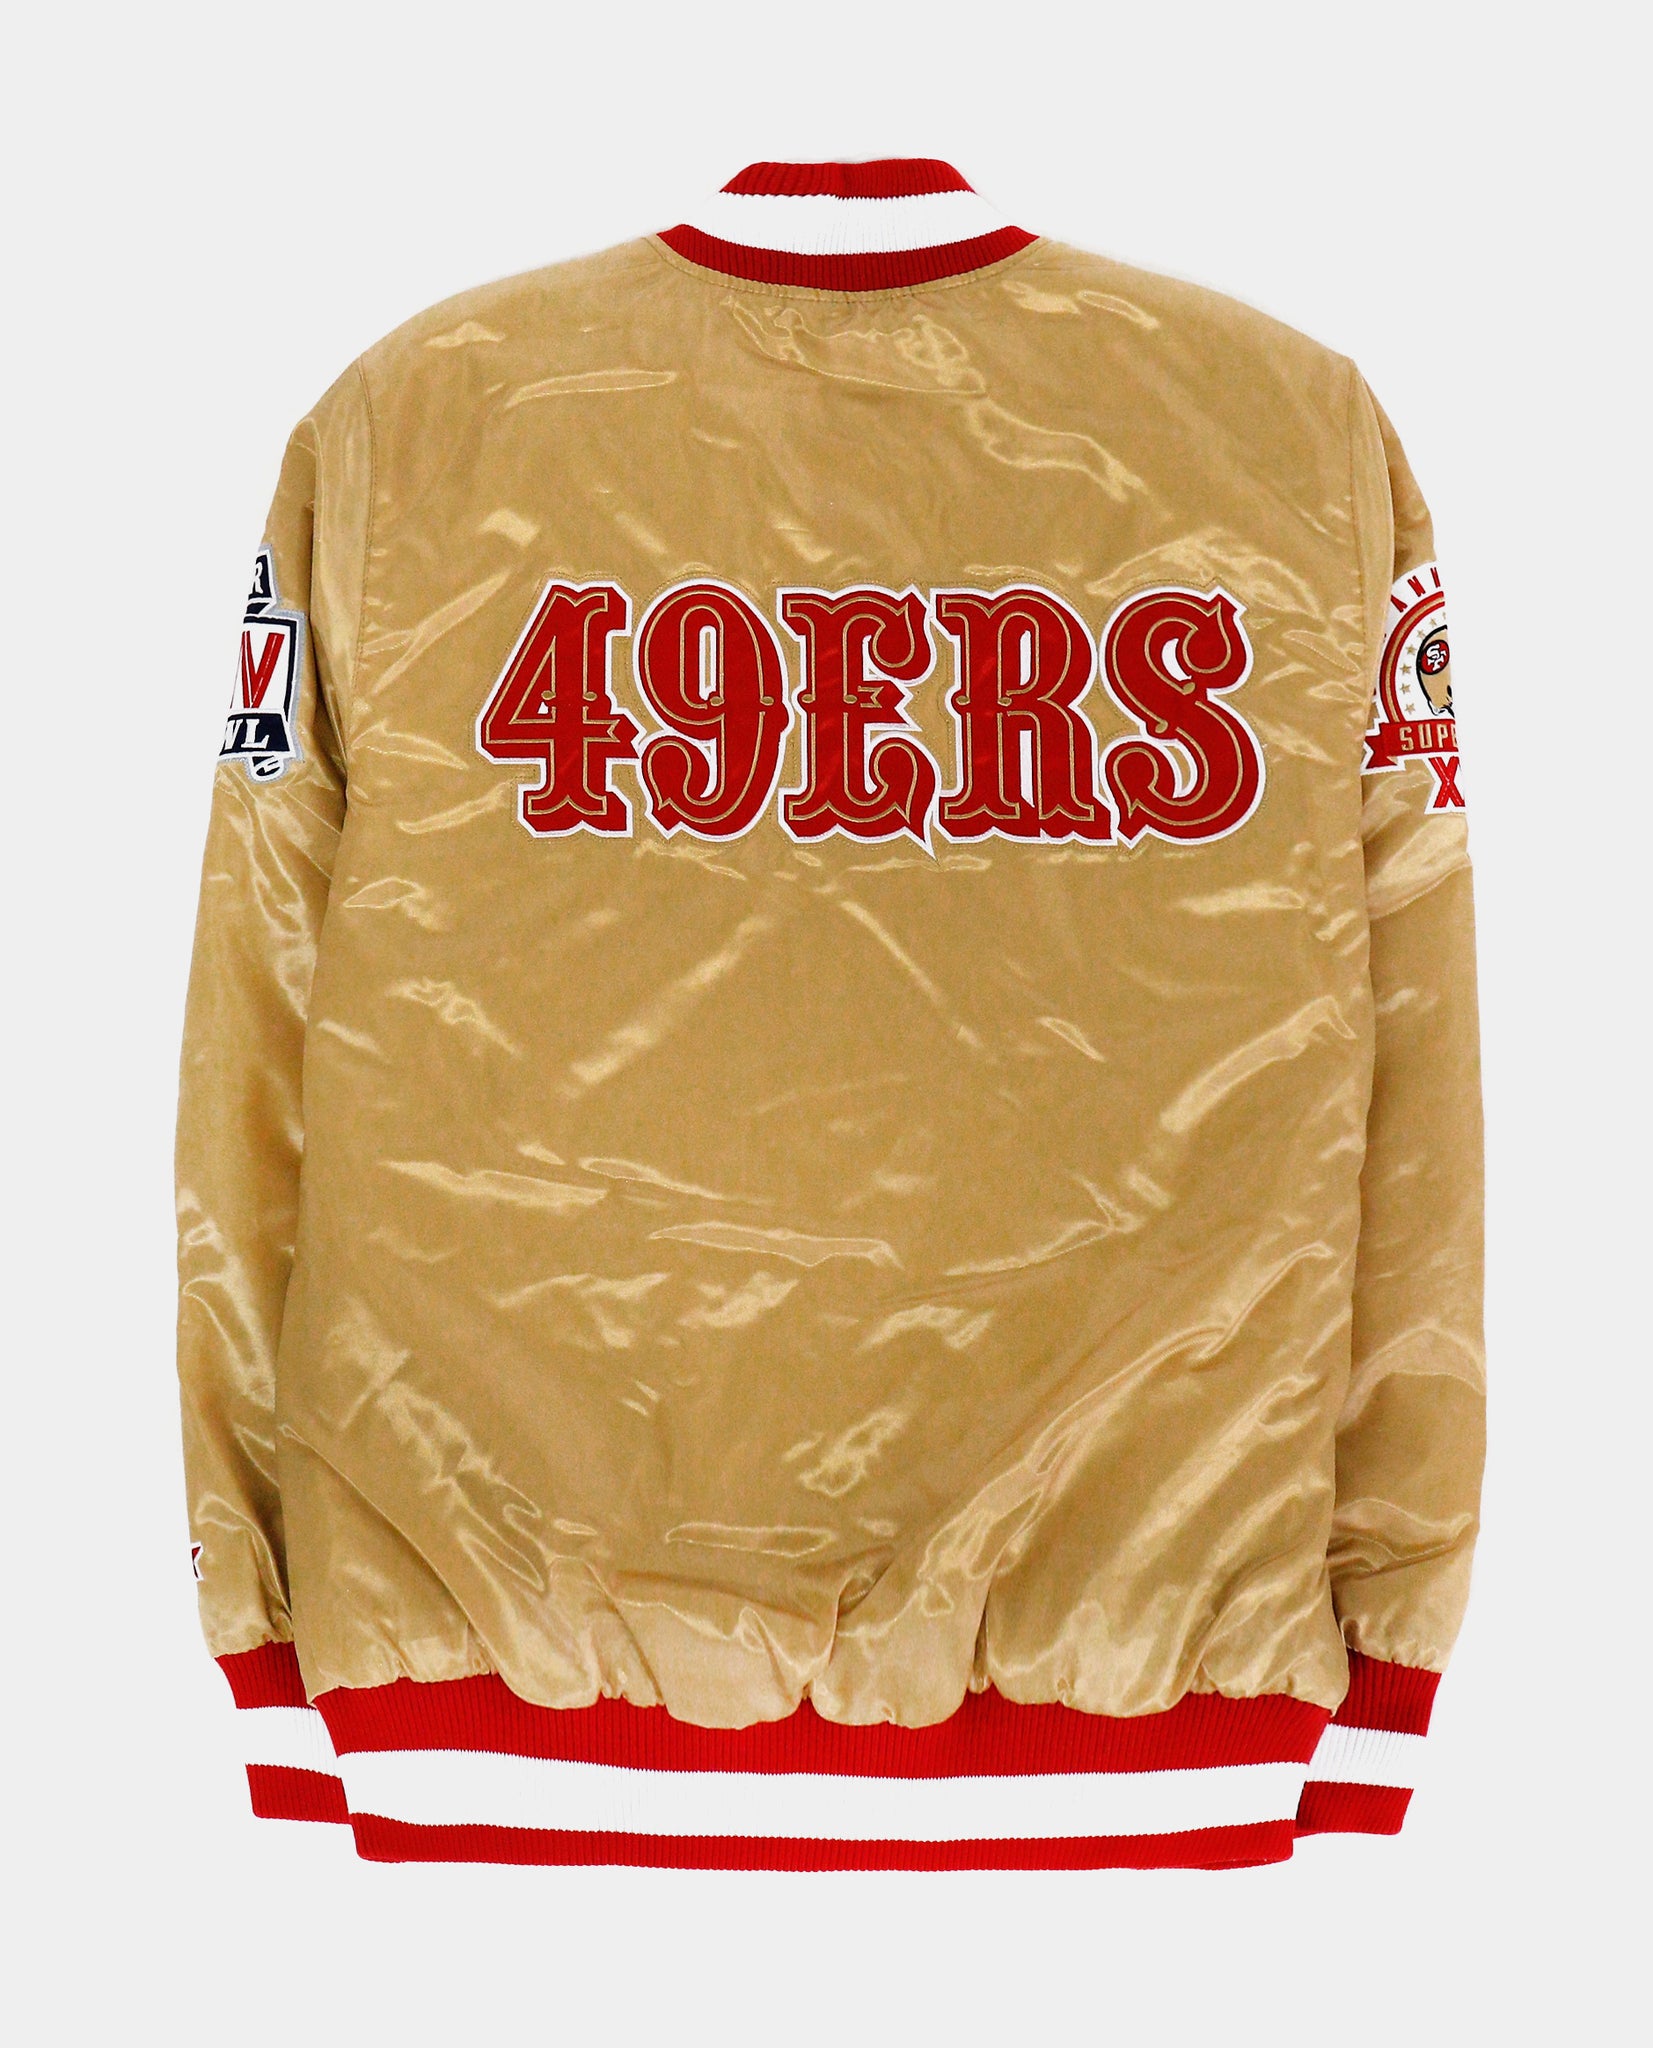 49ers Jacket  San Francisco Starter Gold Bomber Jacket